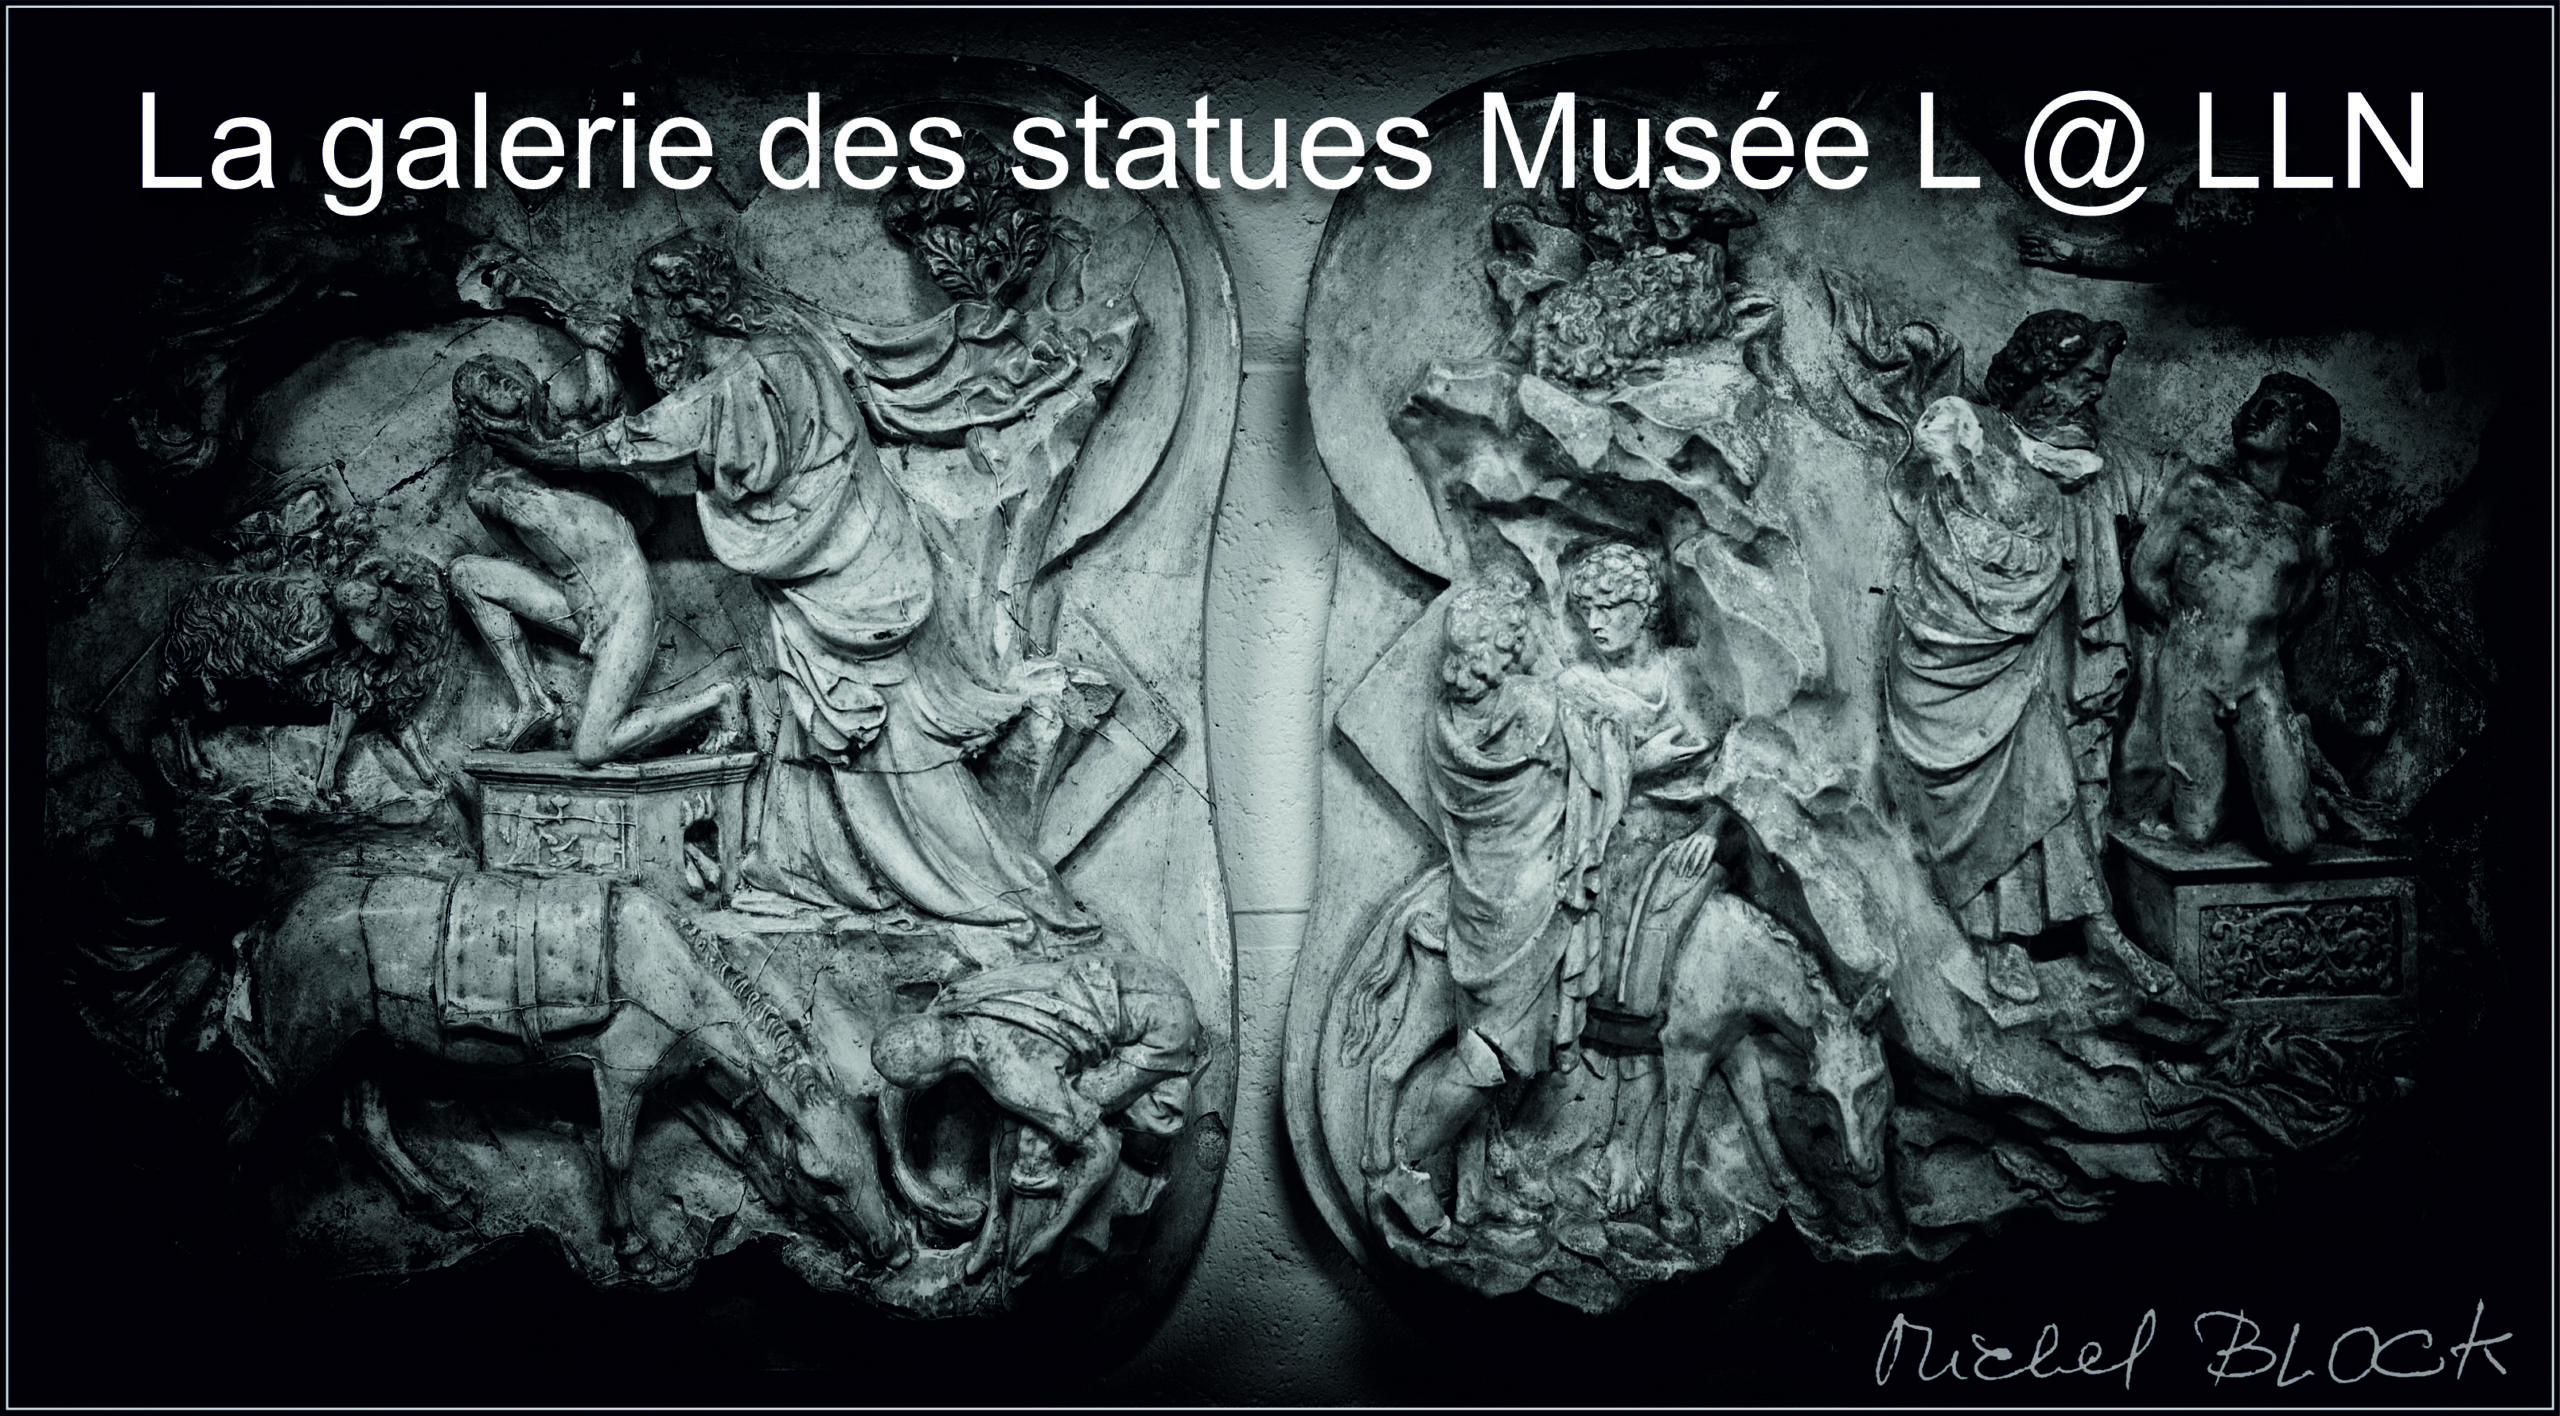 La galerie des Statues Musée L @ LLN